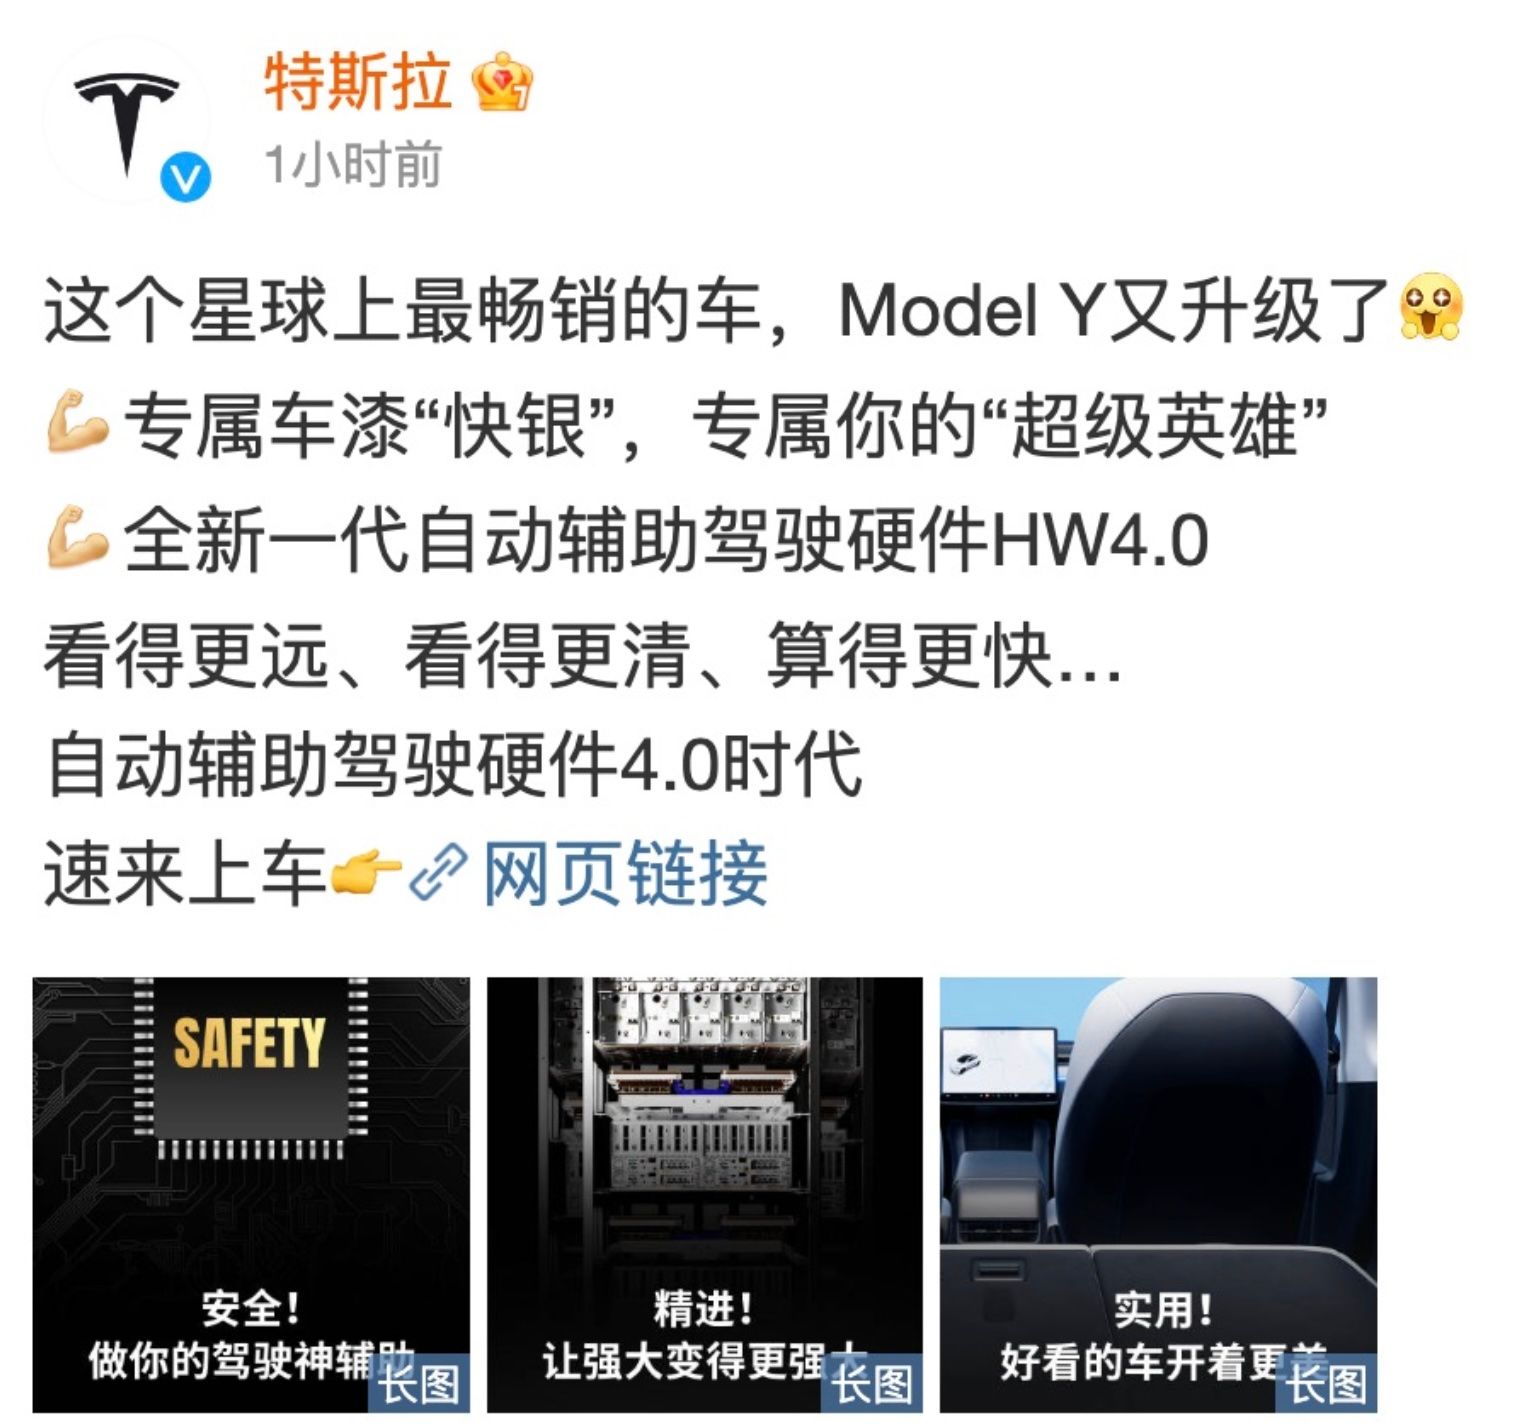 Tesla Model Y weibo hardware 4.0 post